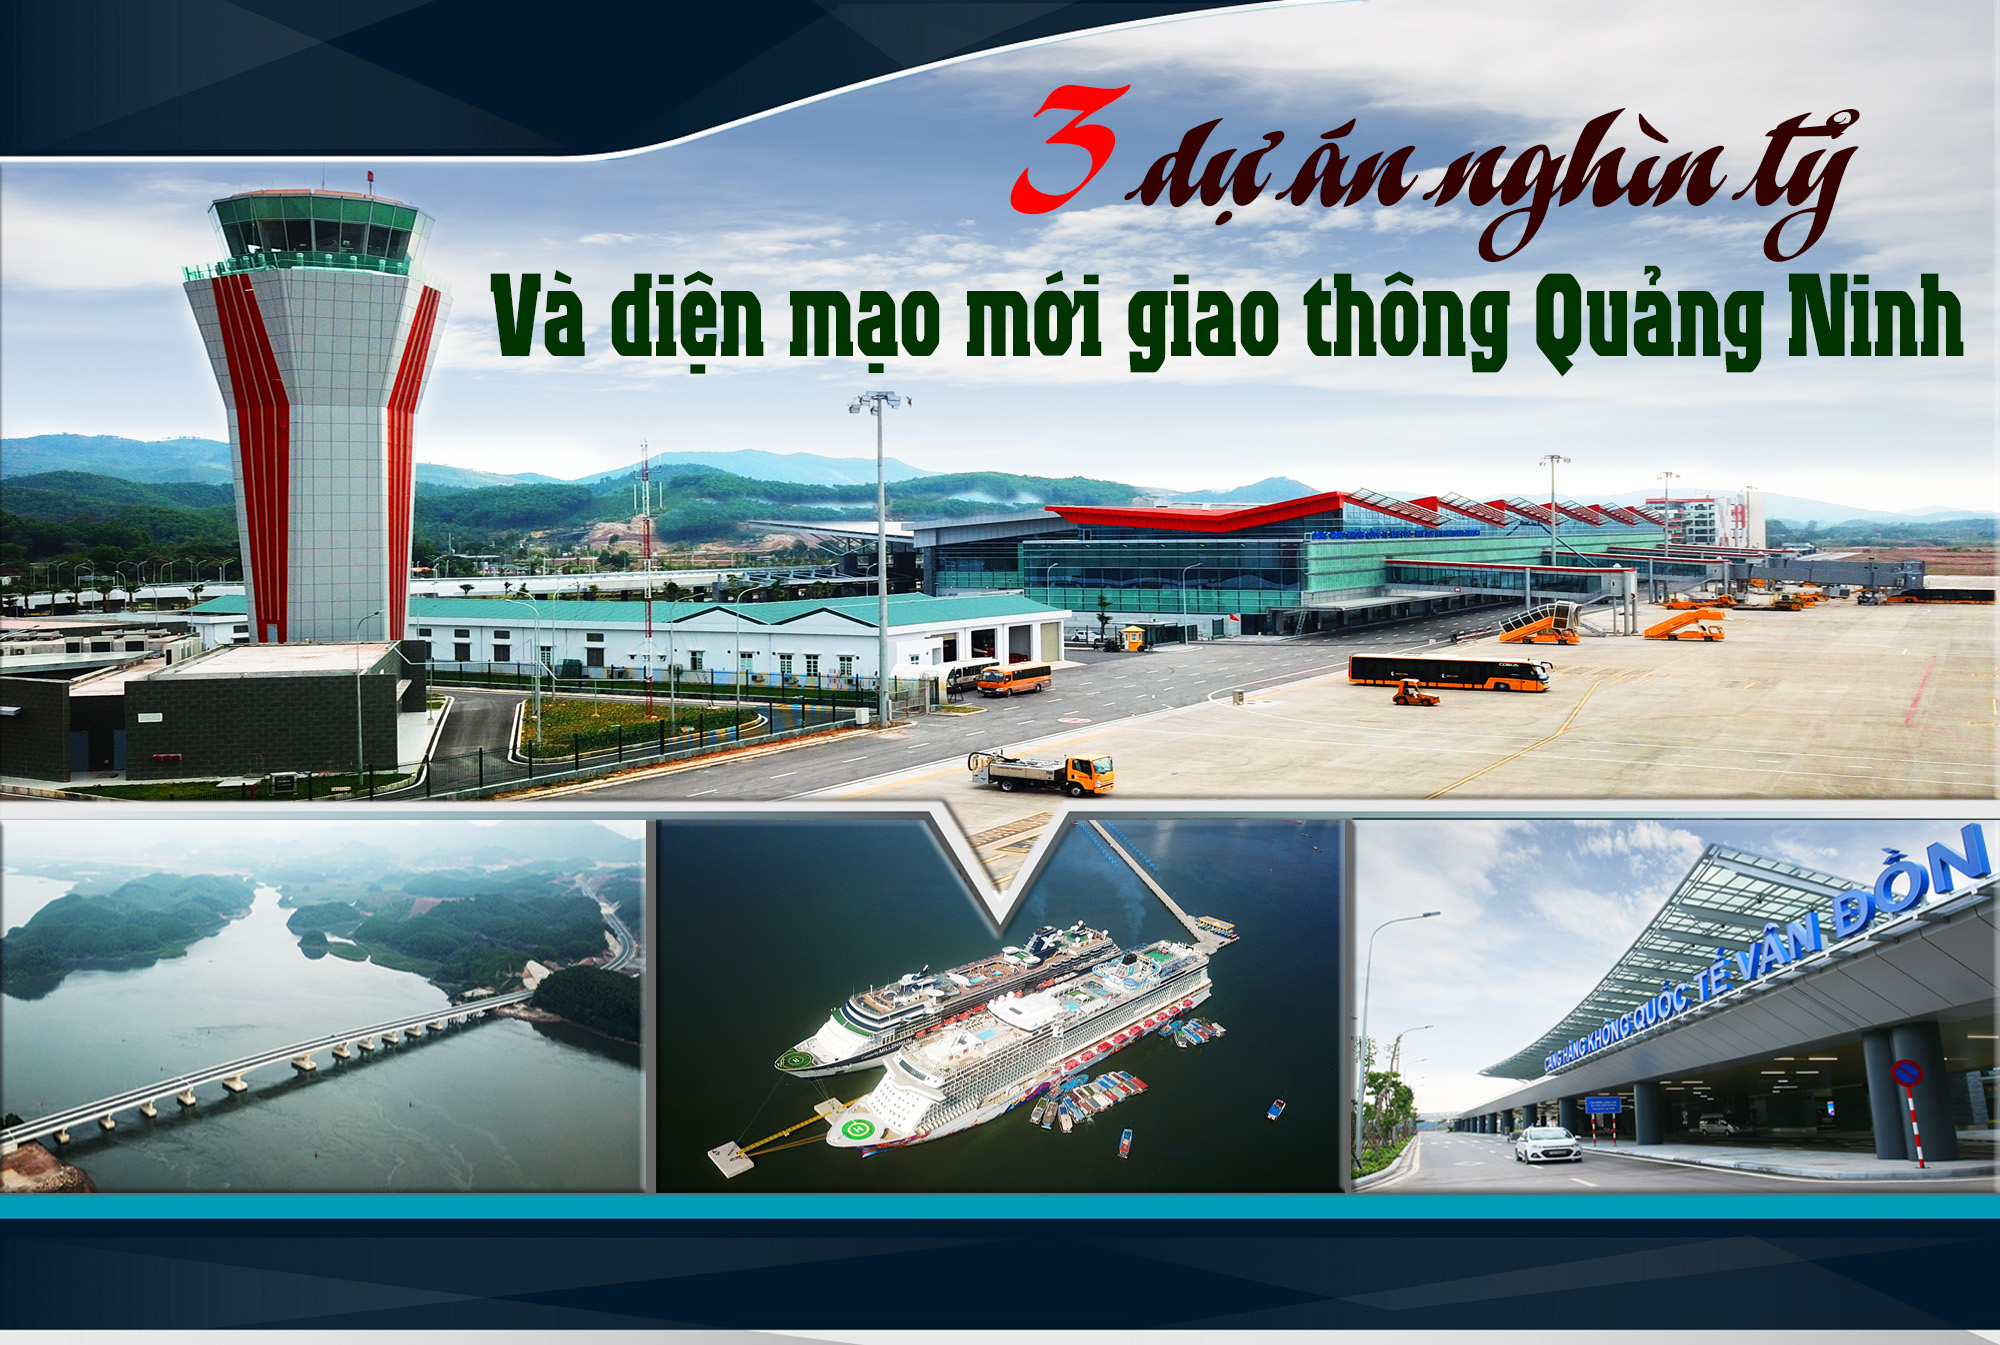 Ngày 30/12, Quảng Ninh đồng loạt khai trương, thông tuyến 3 dự án hạ tầng giao thông trọng điểm trên cả 3 lĩnh vực: Đường không, đường thủy và đường bộ